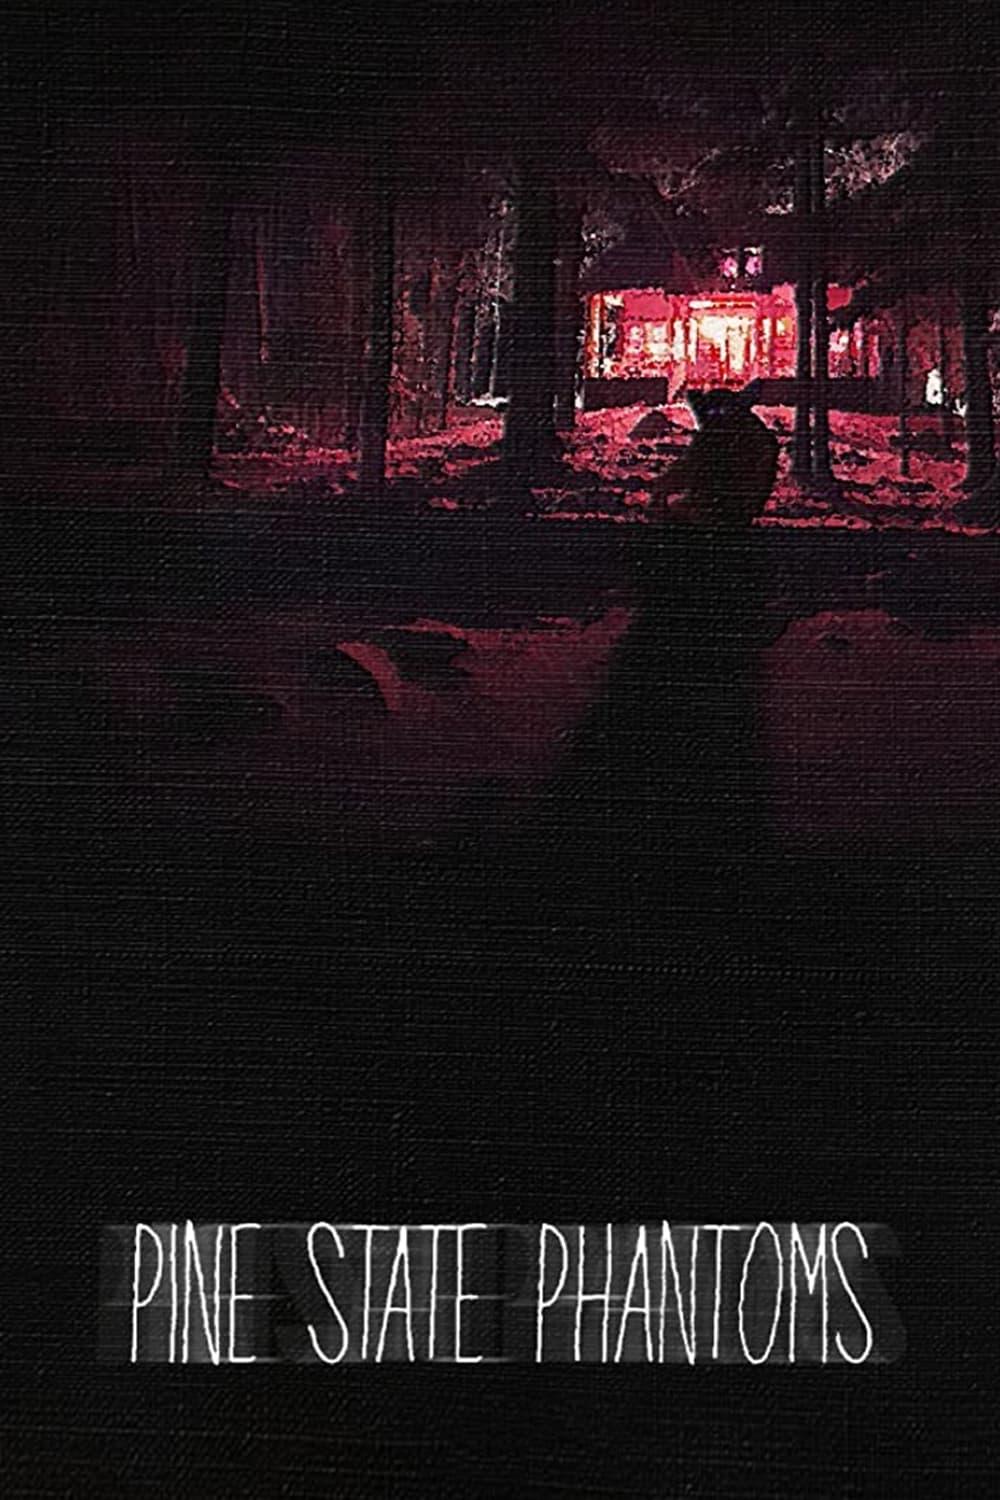 Pine State Phantoms poster